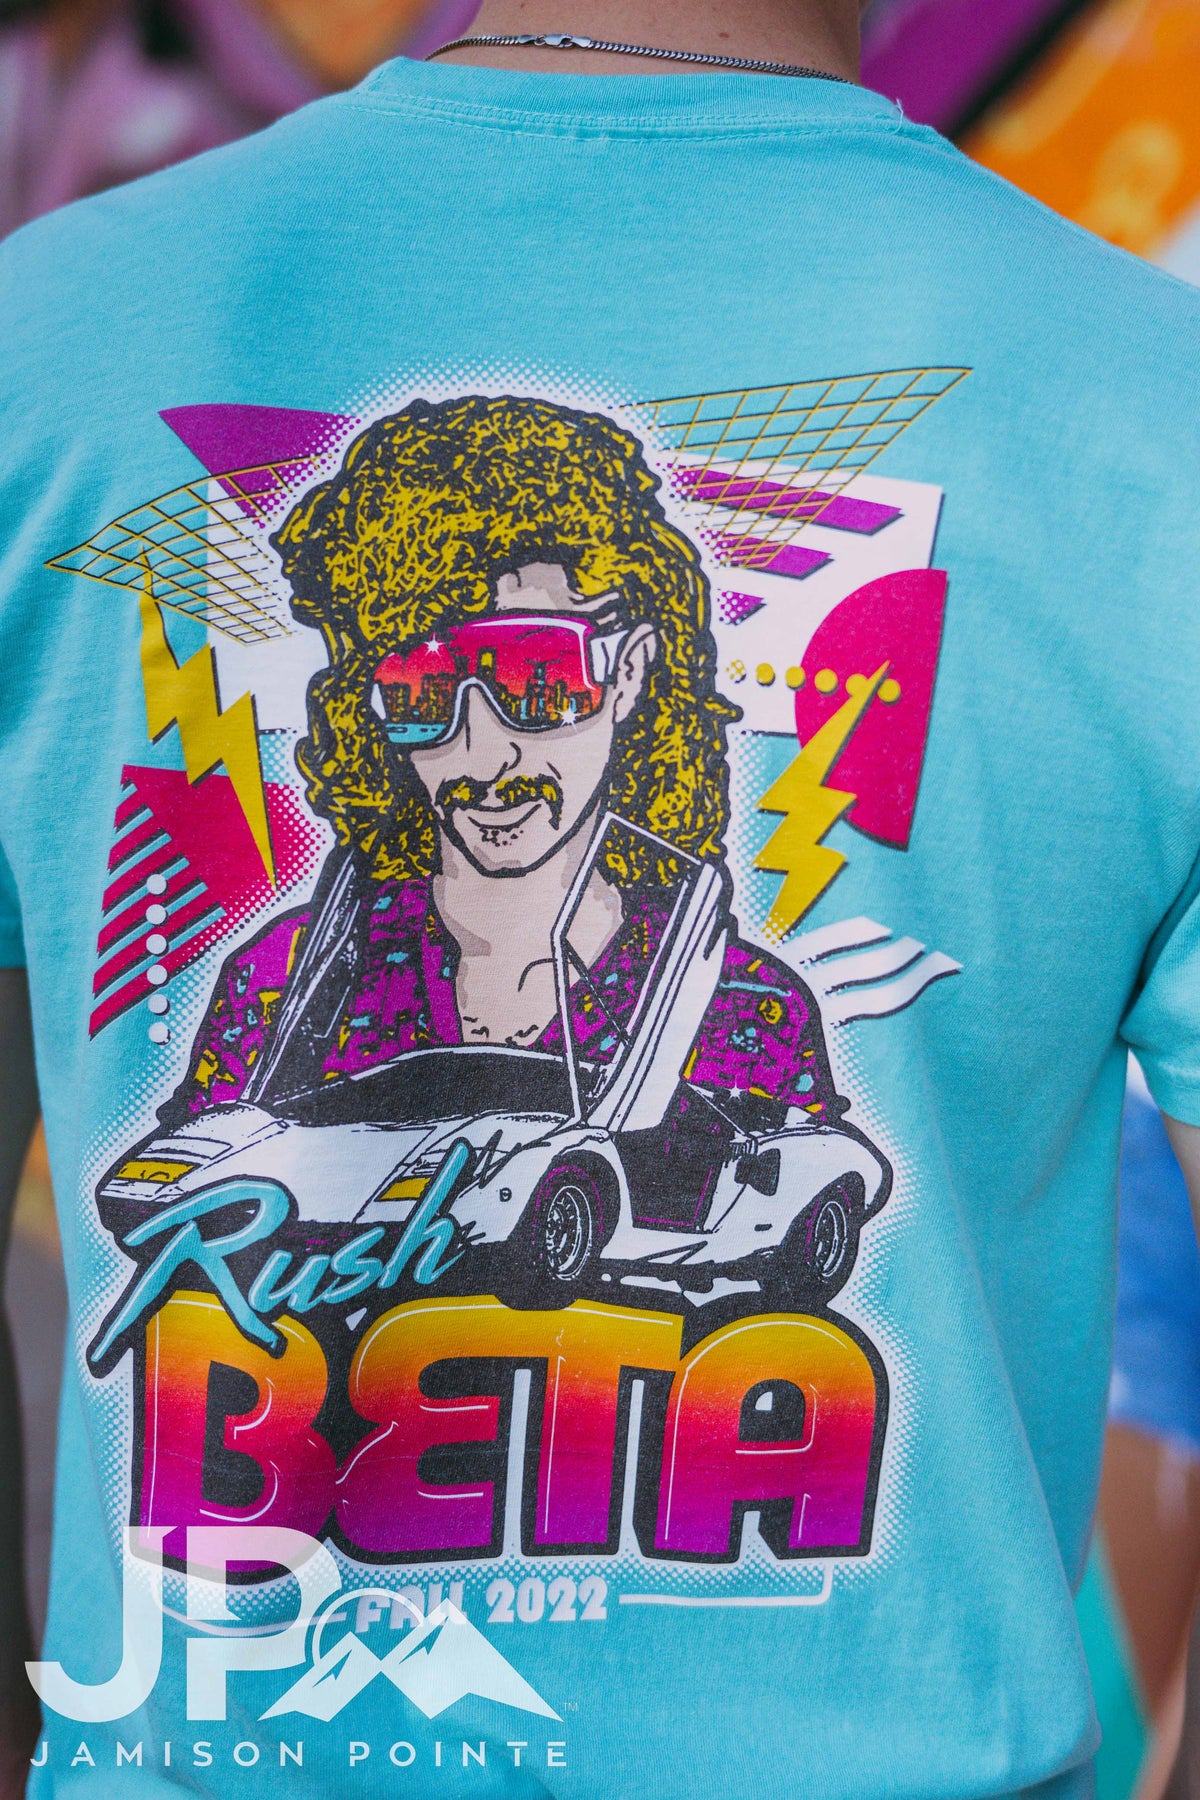 Beta Theta Pi Miami Vice Tshirt